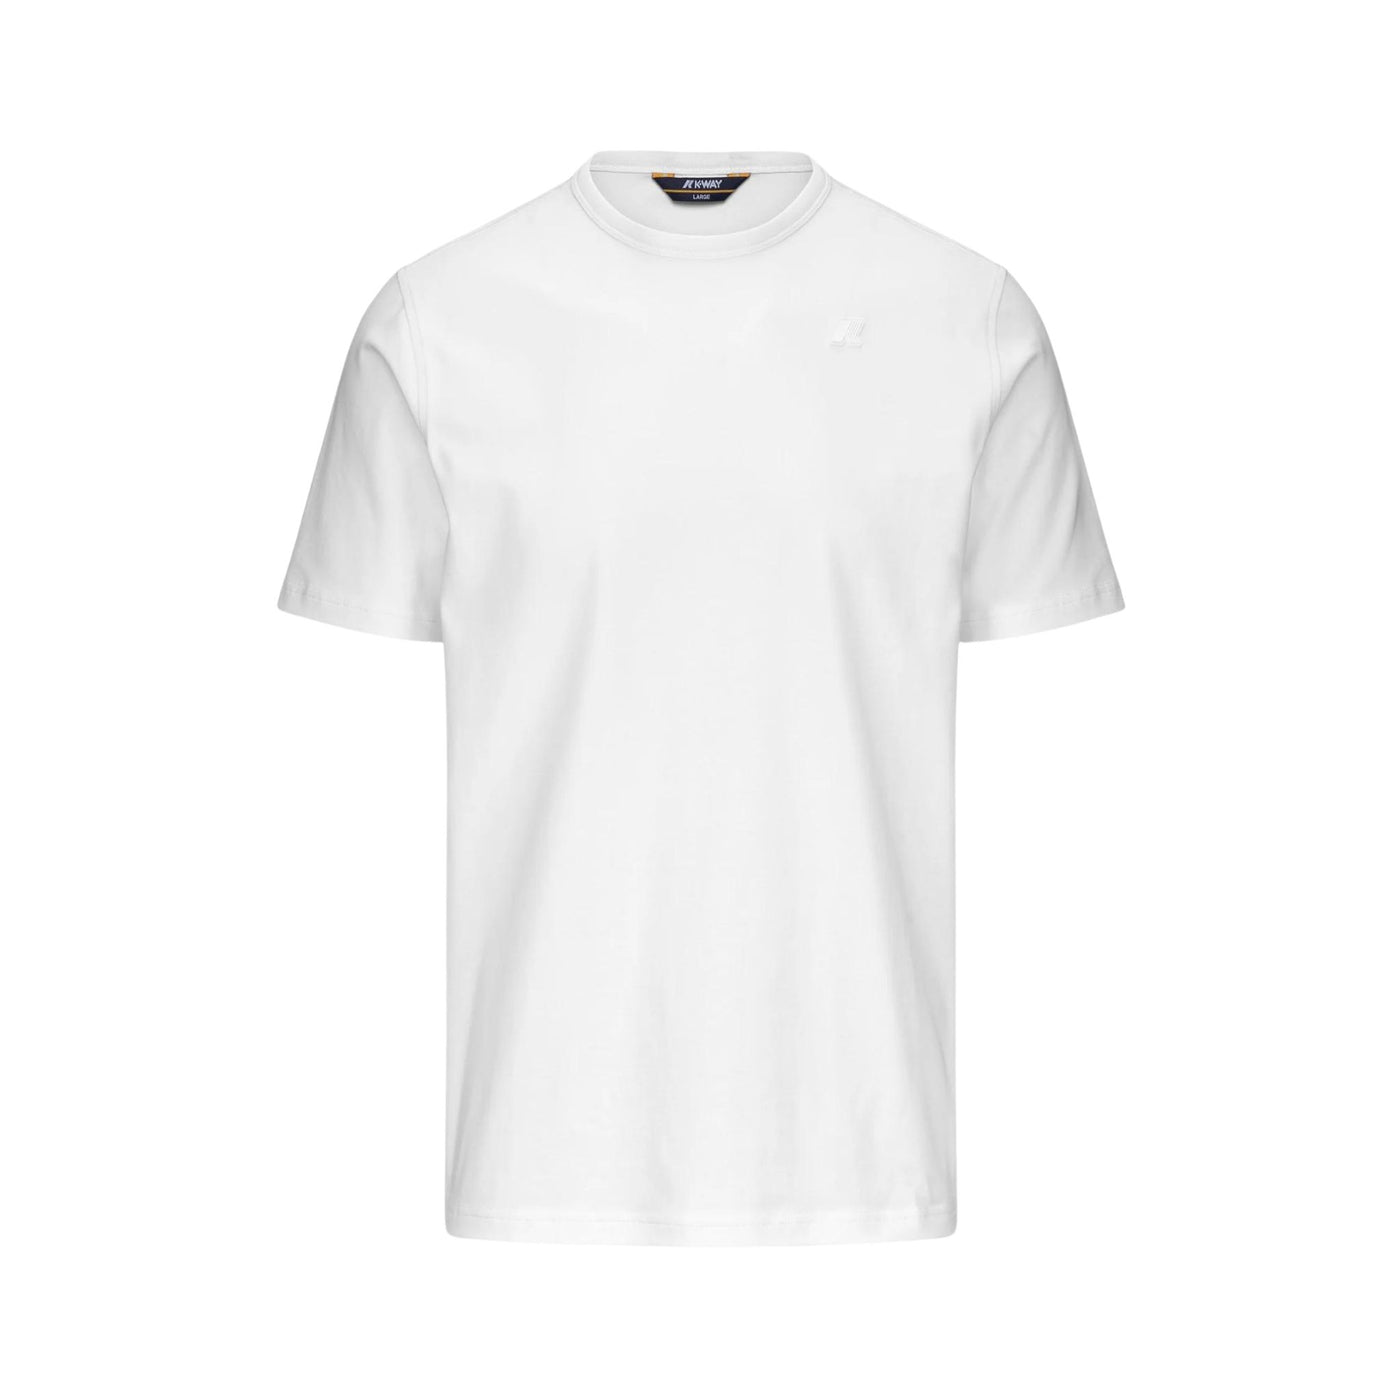 T-shirt in cotone stretch con maniche corte e girocollo e logo ricamato sul petto tono su tono